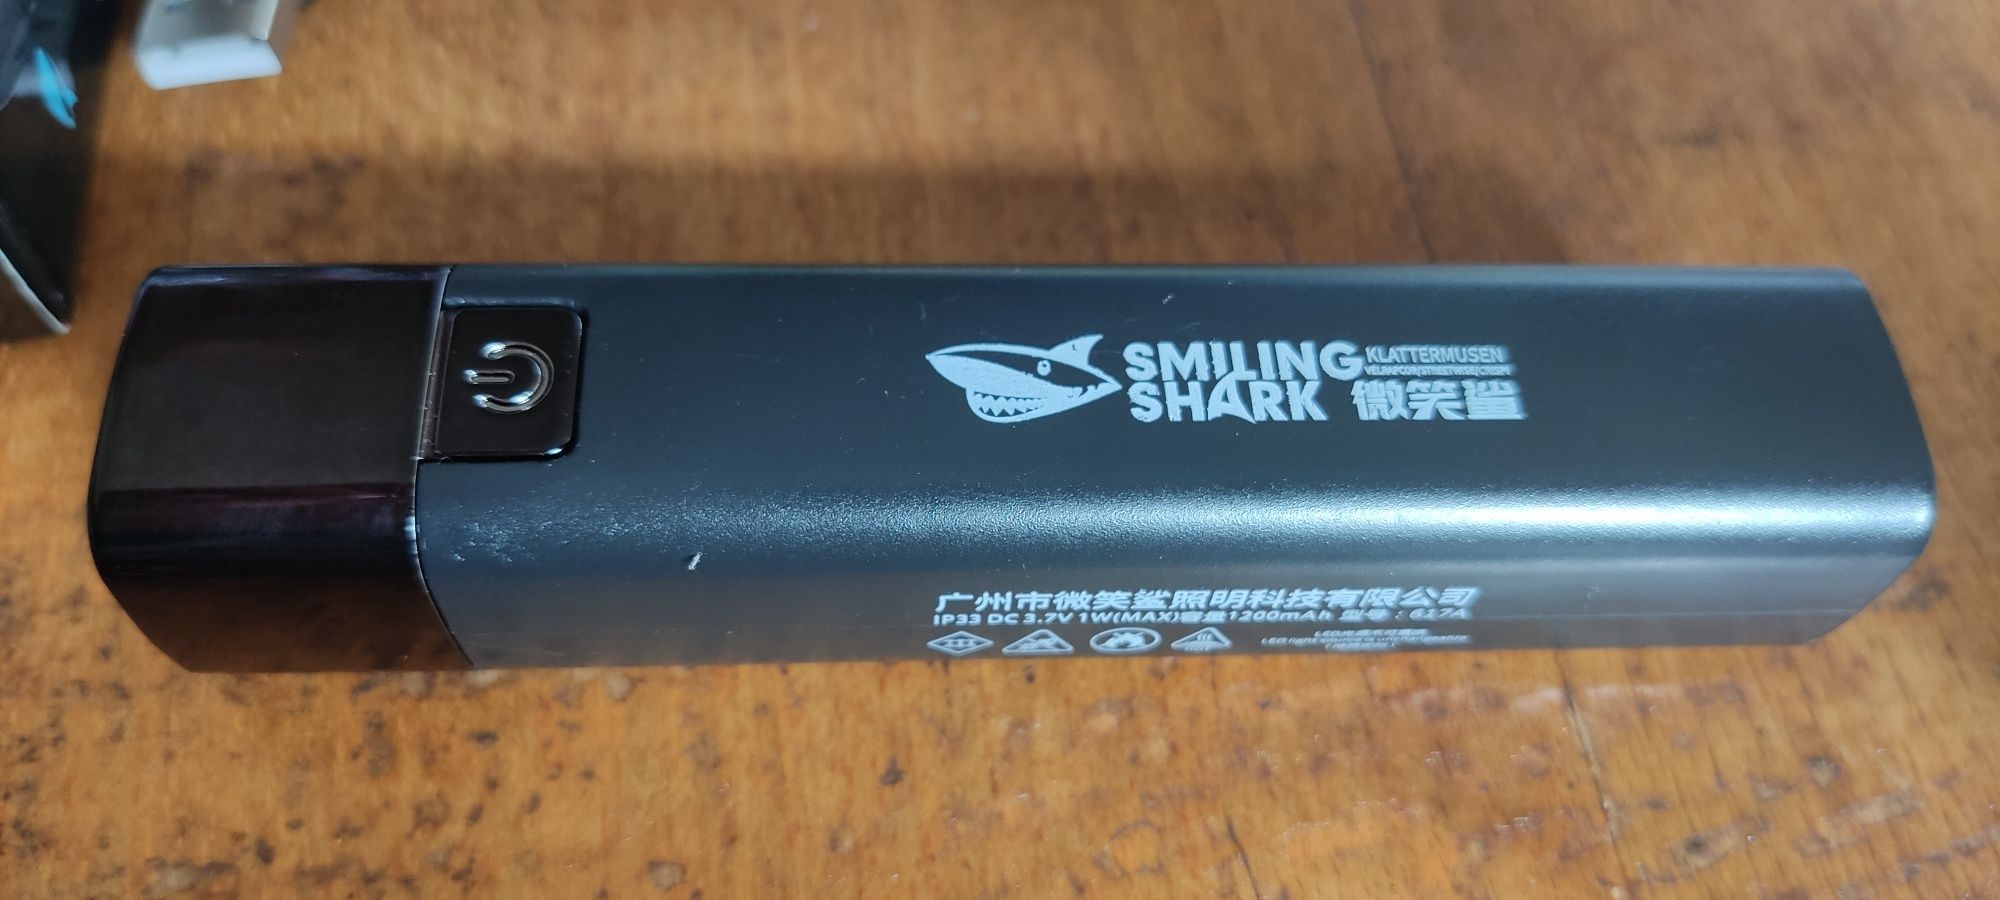 Ліхтарик карманний Smiling Shark